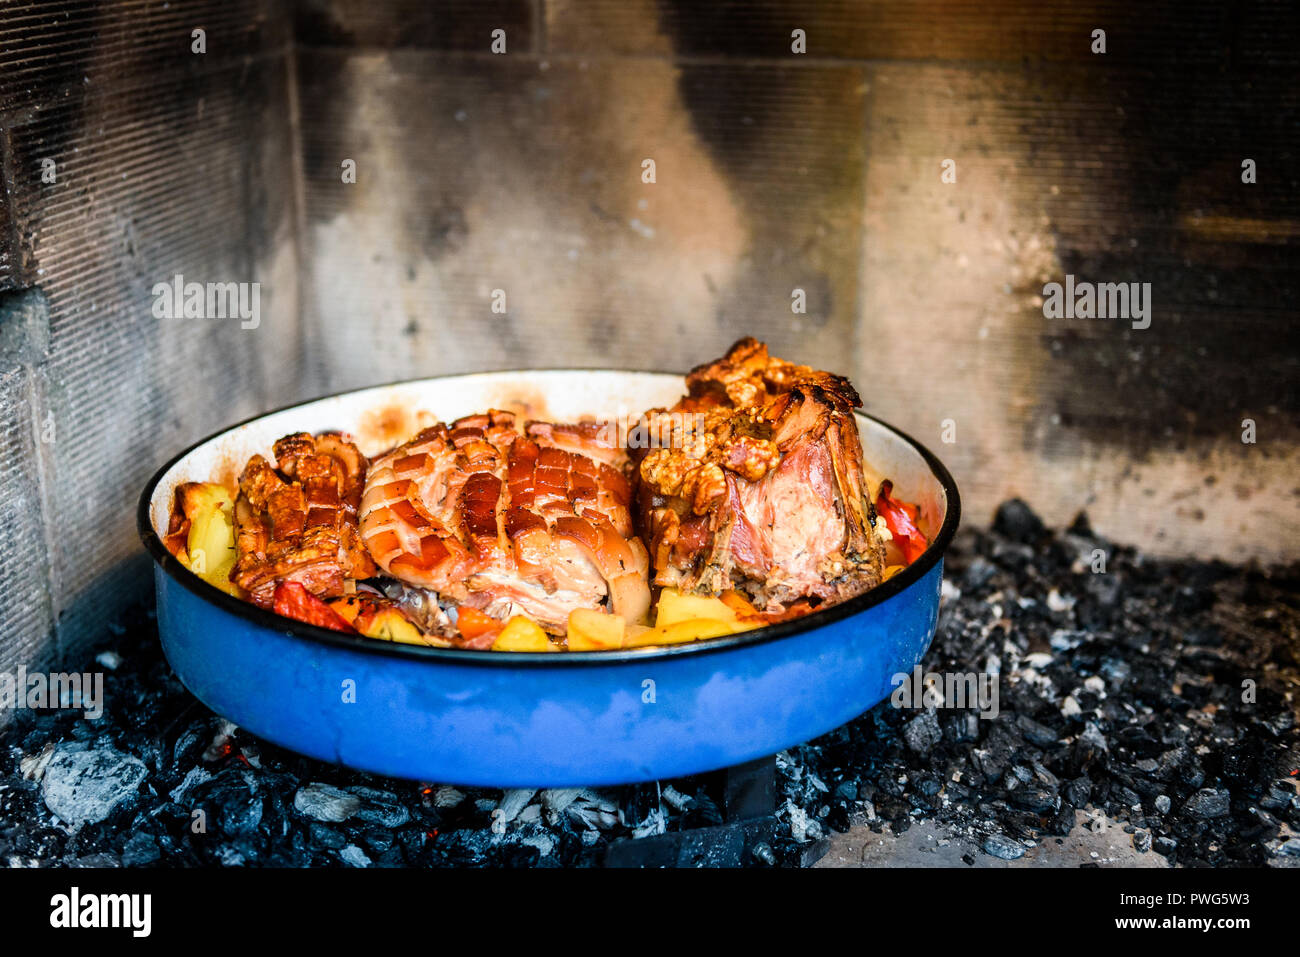 Vorbereiten und kochen Schweinebraten im traditionellen Metal pot Peka.  Fleisch und Gemüse in traditionellen Balkan, Kroatisch, Griechisch  mediterrane Mahlzeit Peka in Stockfotografie - Alamy